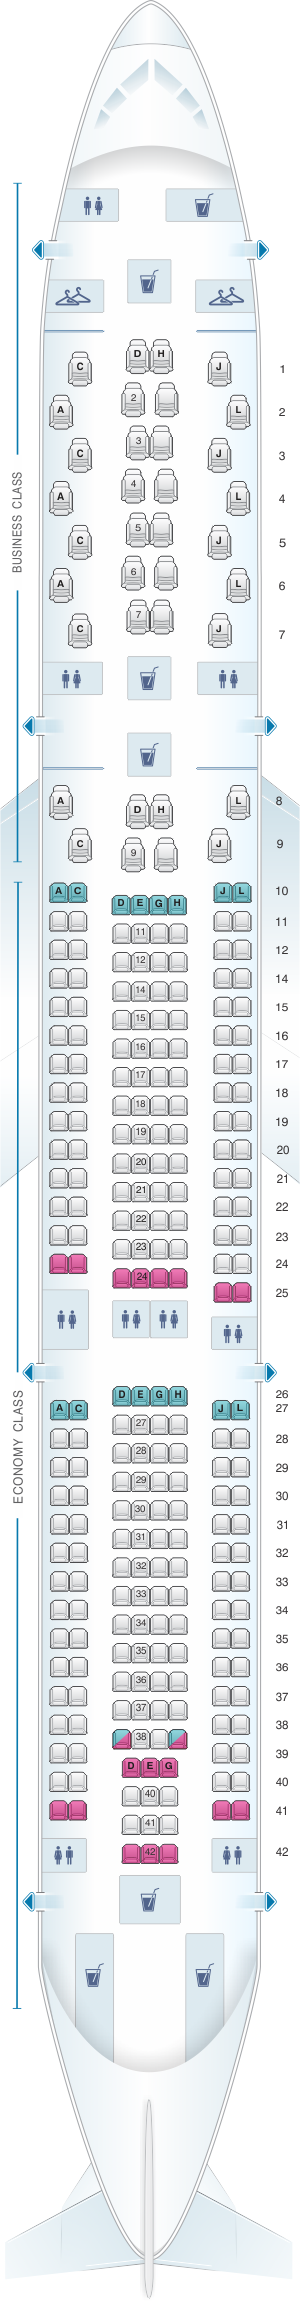 Seat Map Iberia Airbus A330 300 | SeatMaestro